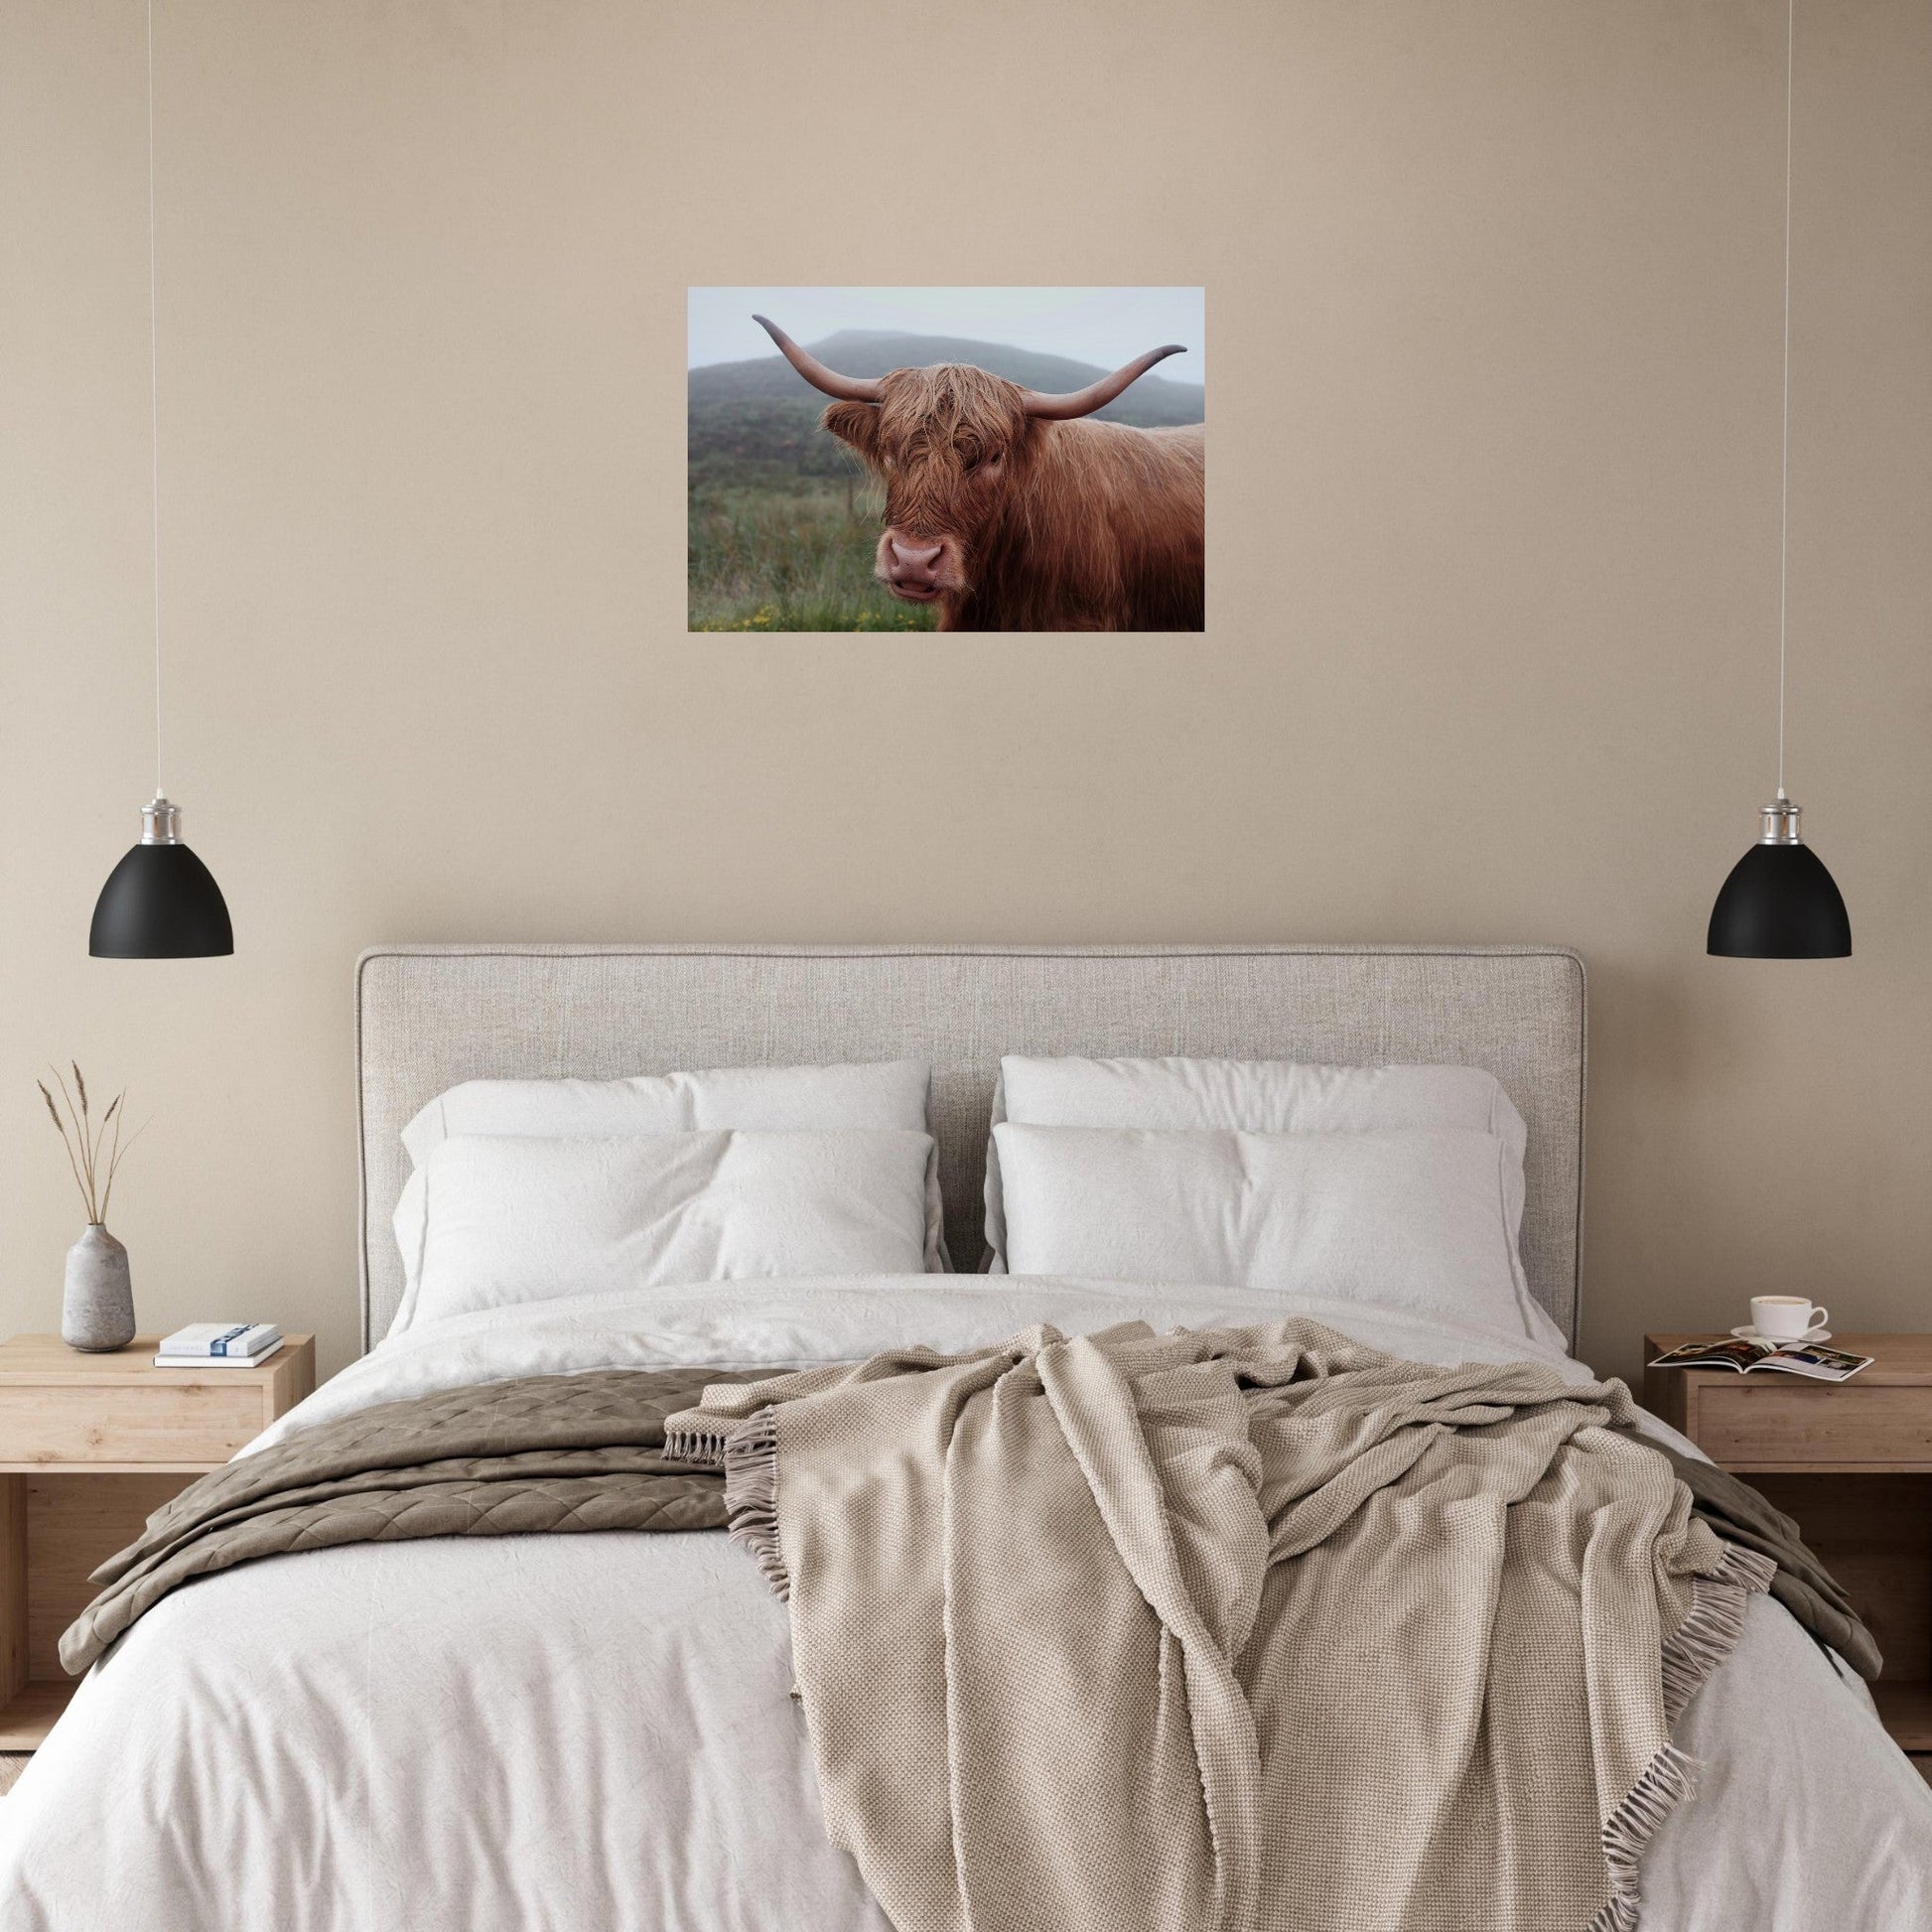 Vente Photo de vaches en Savoie #5 - Tableau photo paysage